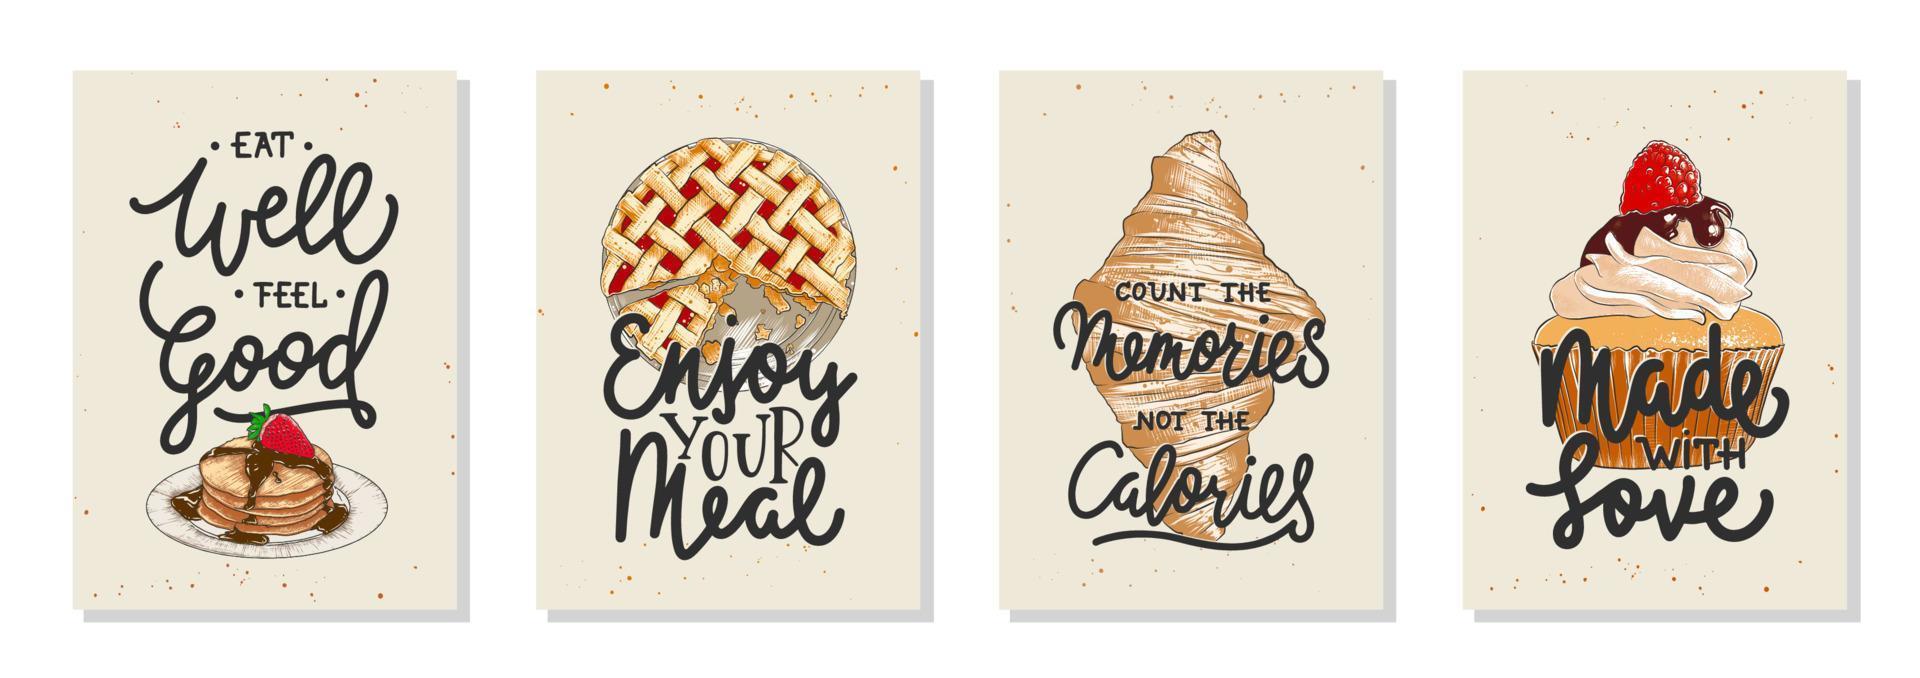 conjunto de 4 afiches vectoriales de panadería con elementos de diseño de letras divertidos únicos dibujados a mano para la decoración de la cocina, impresiones y arte publicitario de la pared del café. boceto grabado de cupcake, panqueques, pastel, croissant. vector